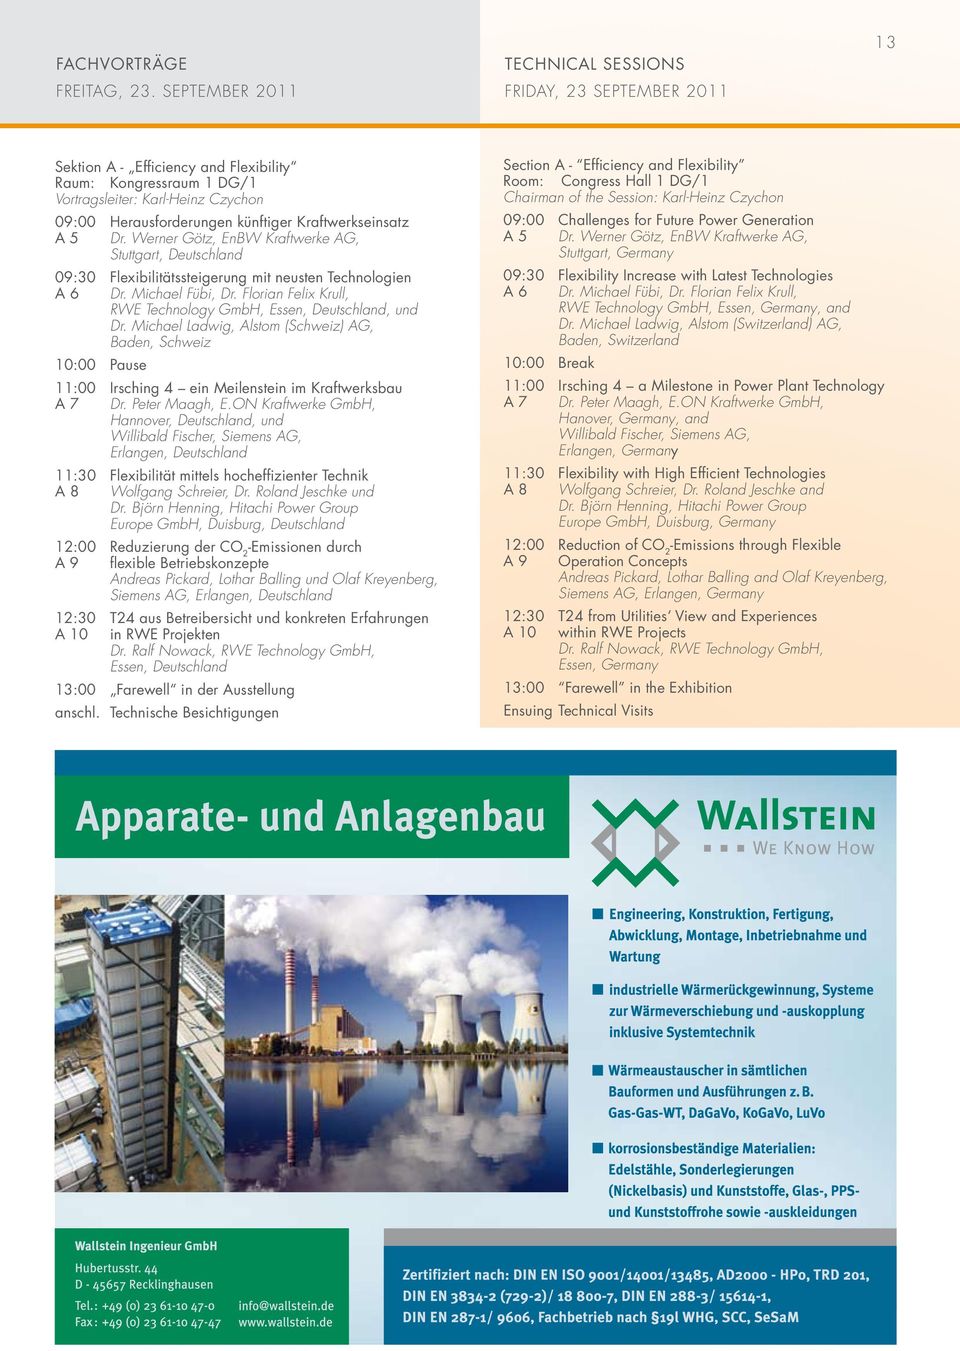 Kraftwerkseinsatz A 5 Dr. Werner Götz, EnBW Kraftwerke AG, Stuttgart, Deutschland 09:30 Flexibilitätssteigerung mit neusten Technologien A 6 Dr. Michael Fübi, Dr.